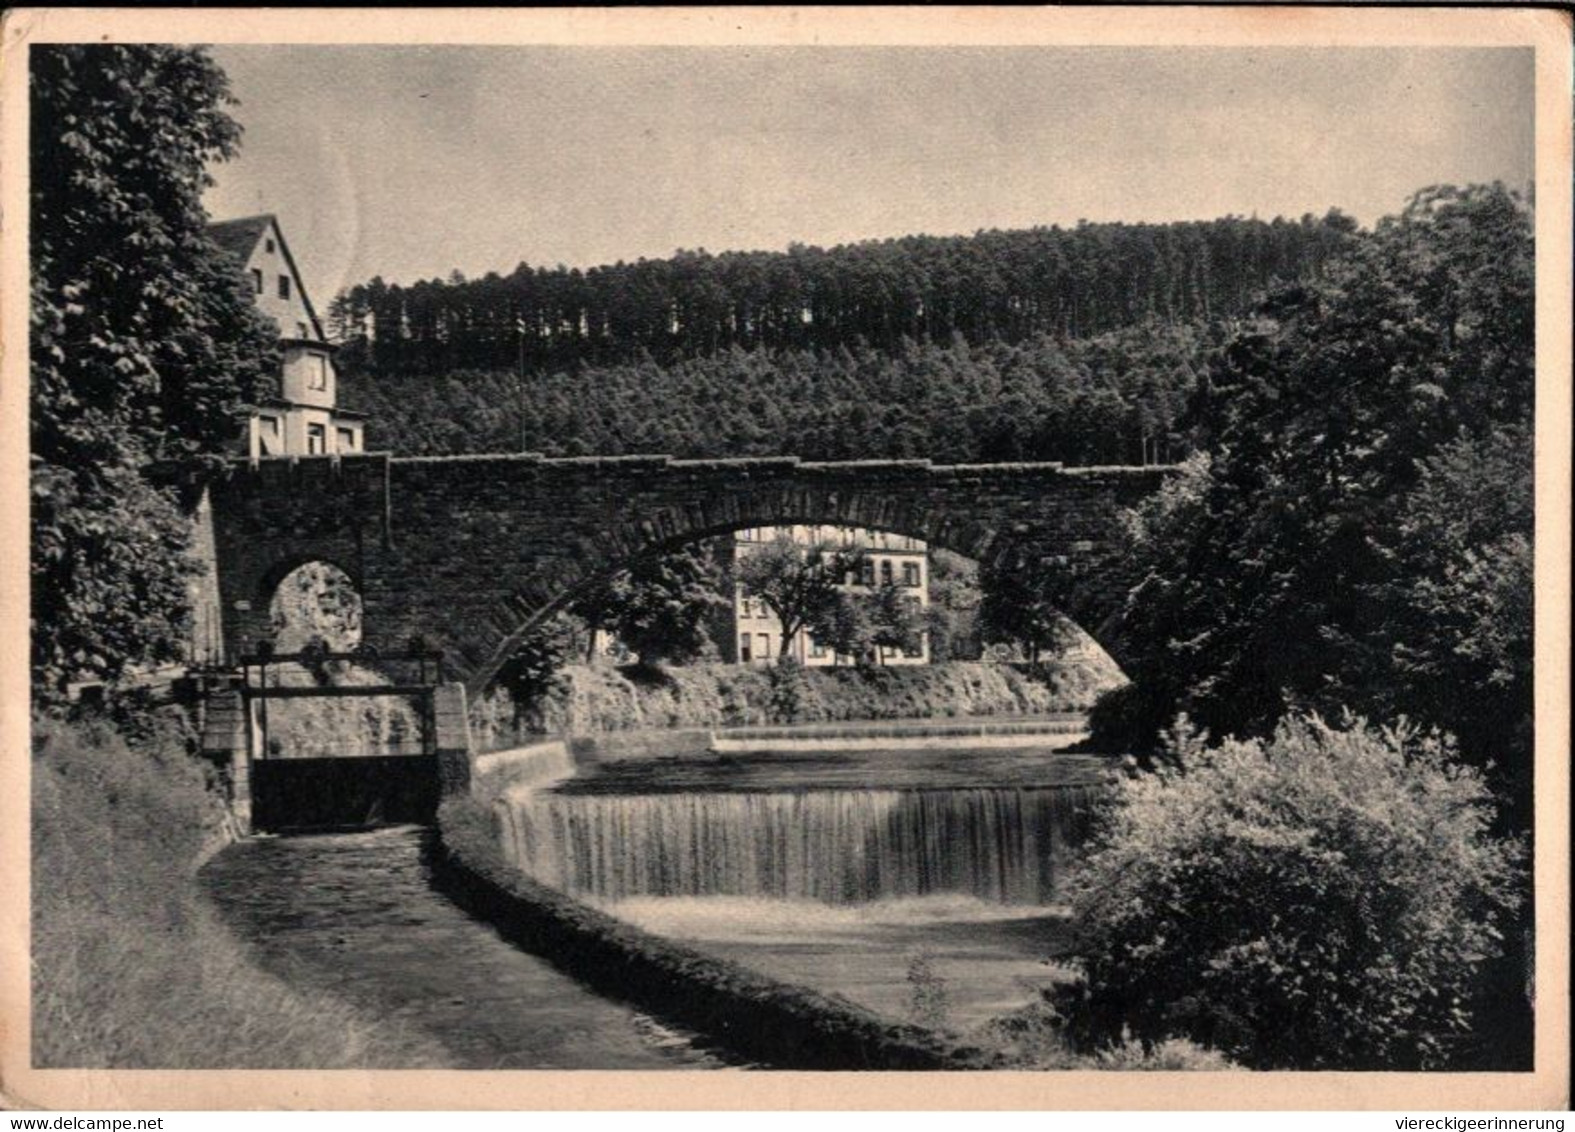 ! 1936 Alte Ansichtskarte Aus Pforzheim, Dillweissenstein, Brücke, Bridge, Nagold, Briefmarke Mit Firmenlochung, Perfin - Puentes